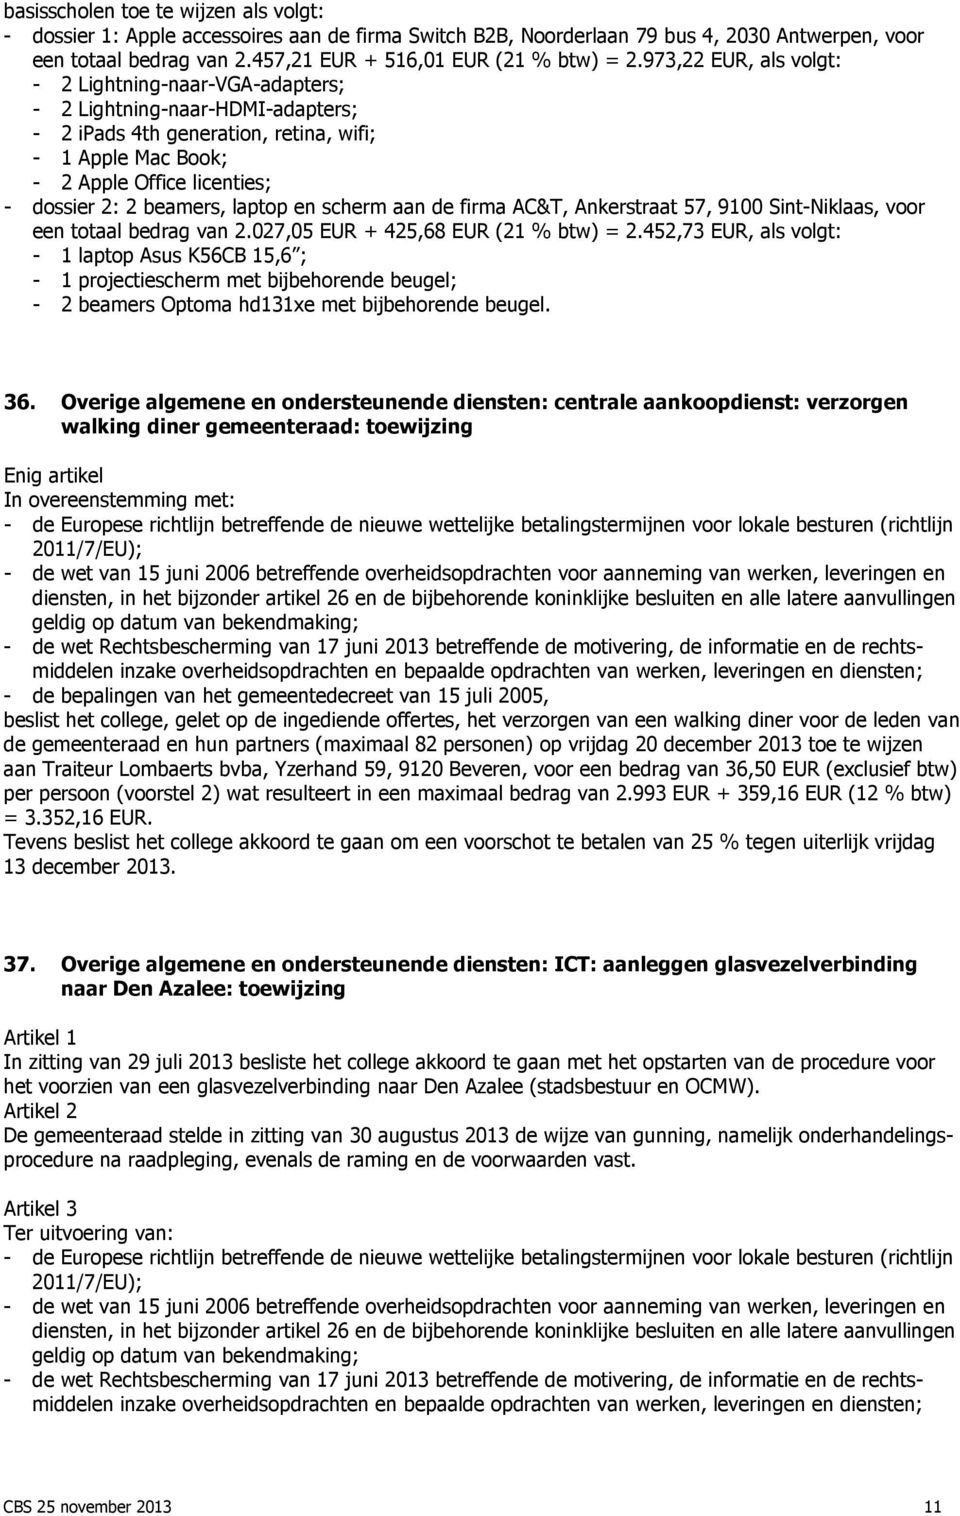 beamers, laptop en scherm aan de firma AC&T, Ankerstraat 57, 9100 Sint-Niklaas, voor een totaal bedrag van 2.027,05 EUR + 425,68 EUR (21 % btw) = 2.